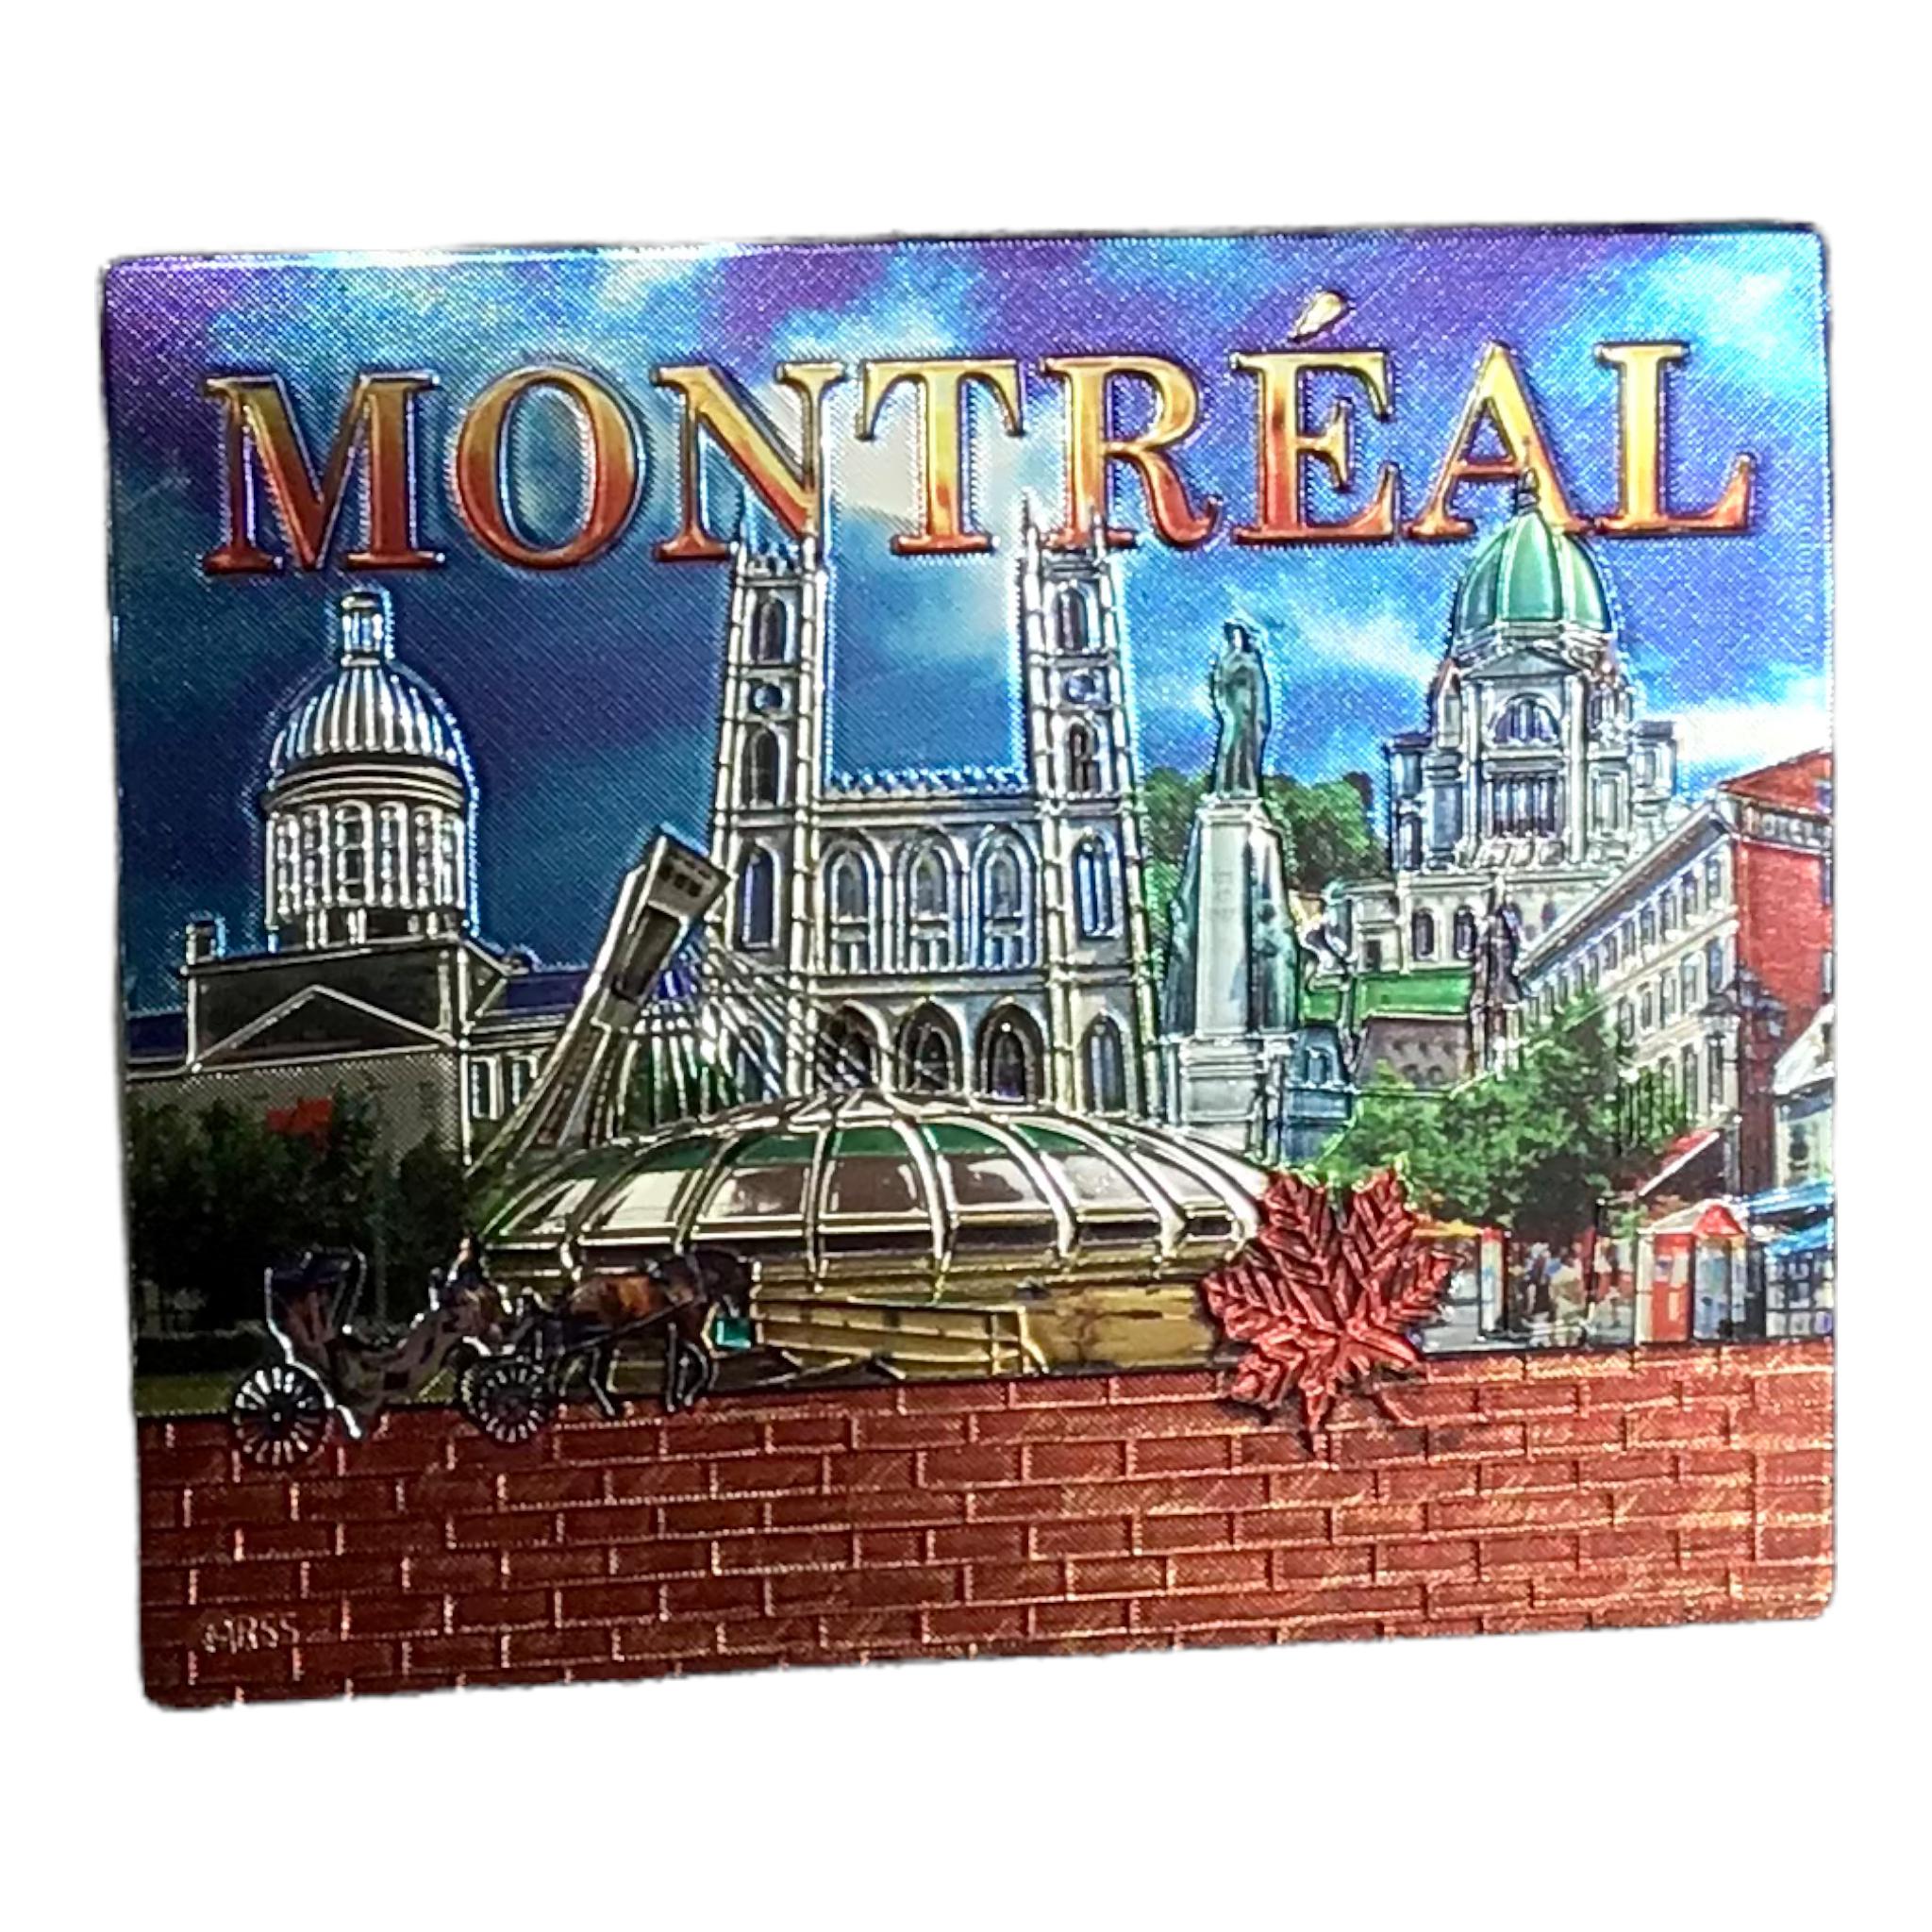 Montreal blue sky landmark foiled laser magnet. Canadian souvenir gift